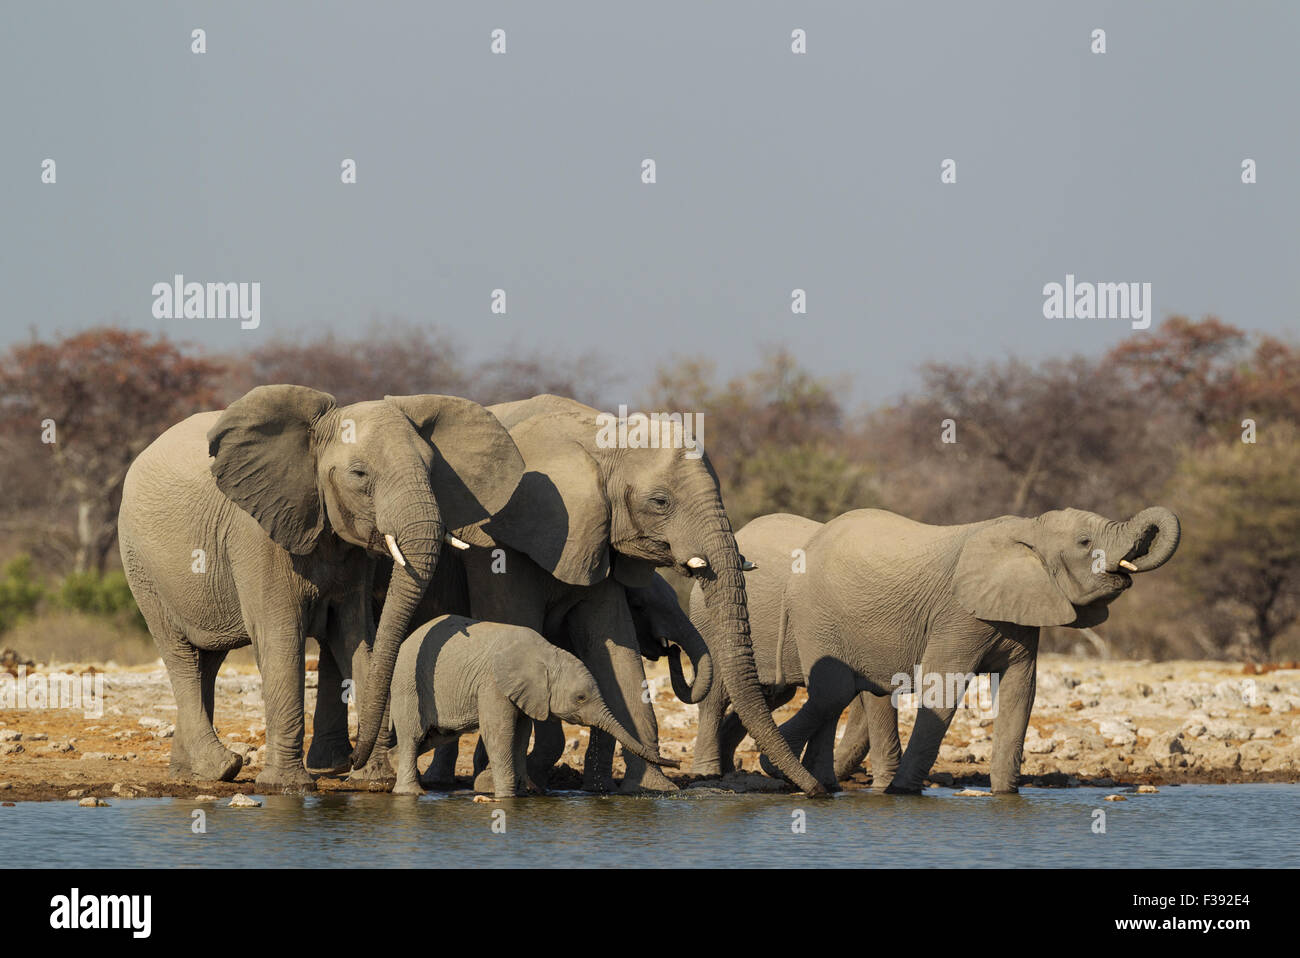 African elephant (Loxodonta africana), breeding herd at waterhole, Etosha National Park, Namibia Stock Photo